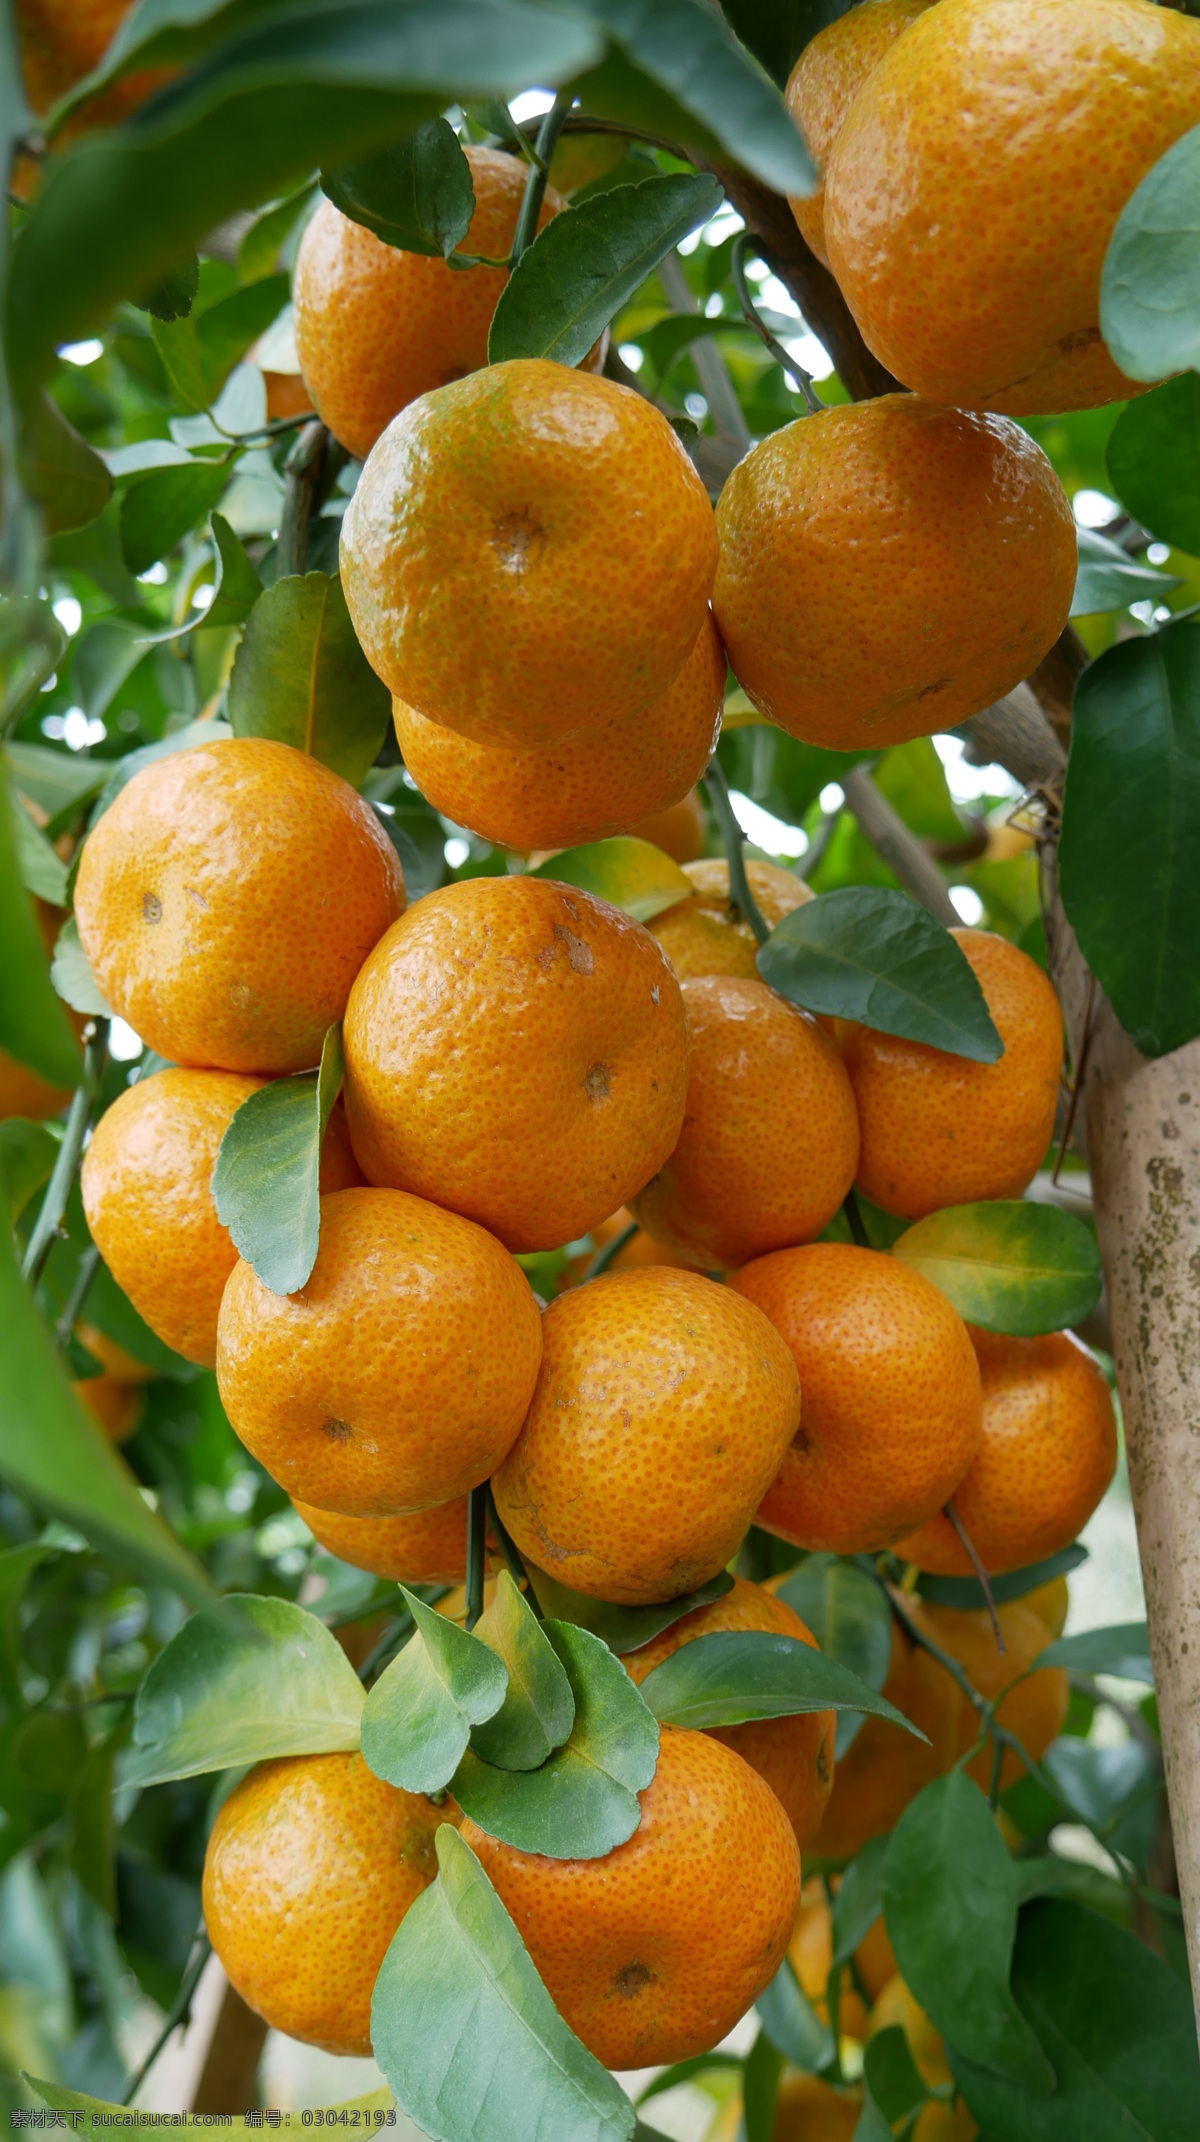 沙糖桔 柑橘 桔子图片 桔子 农业 果树 水果 生物世界